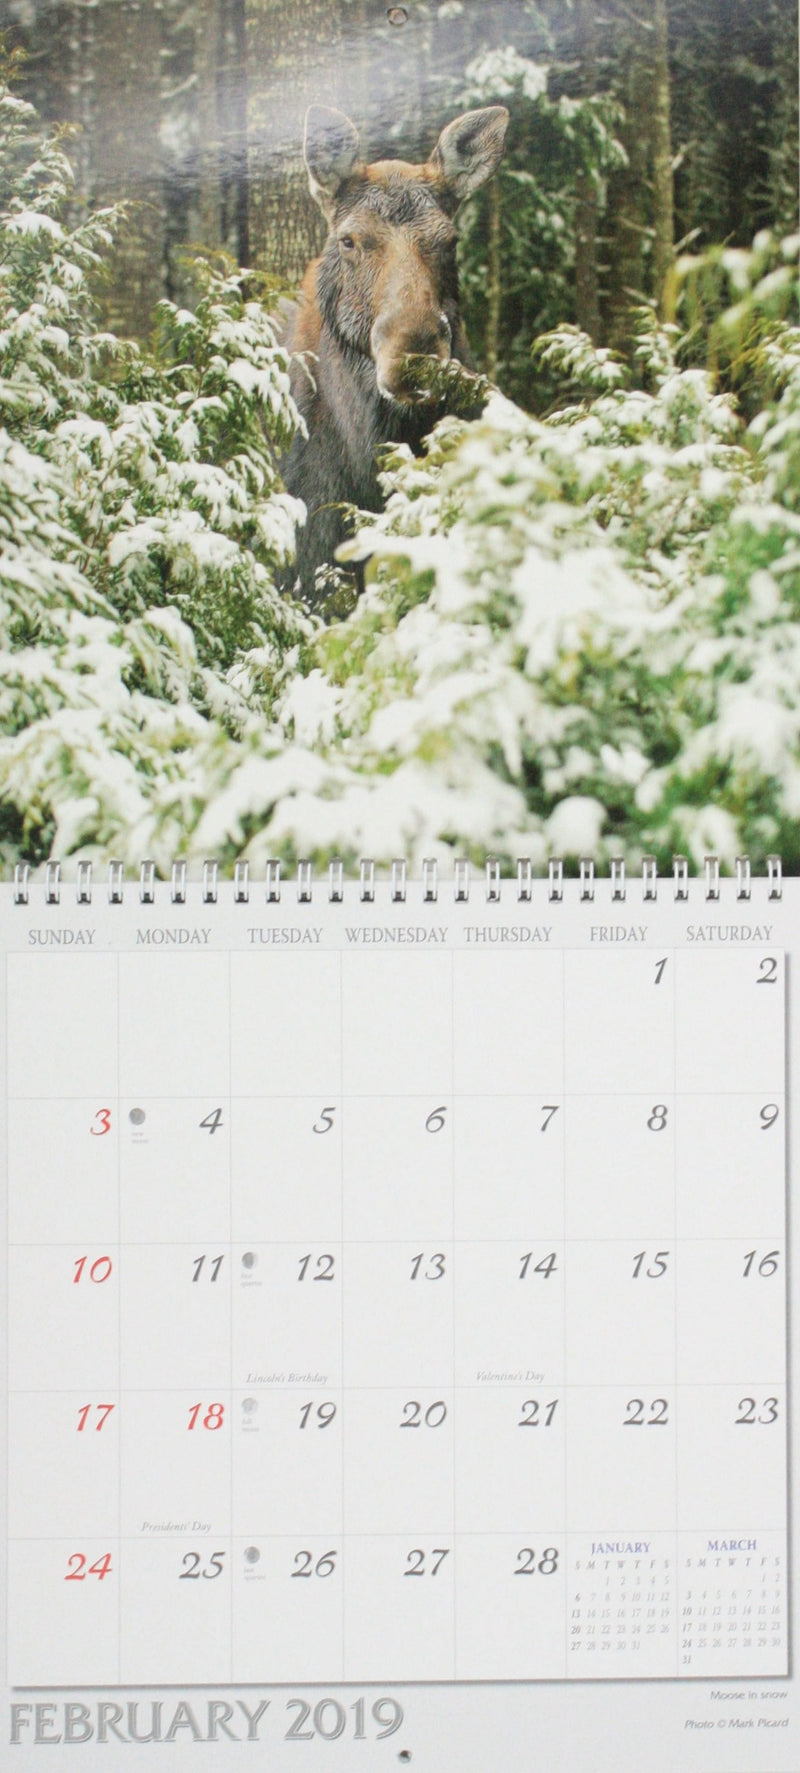 Green Mountain Calendar - Shelburne Country Store